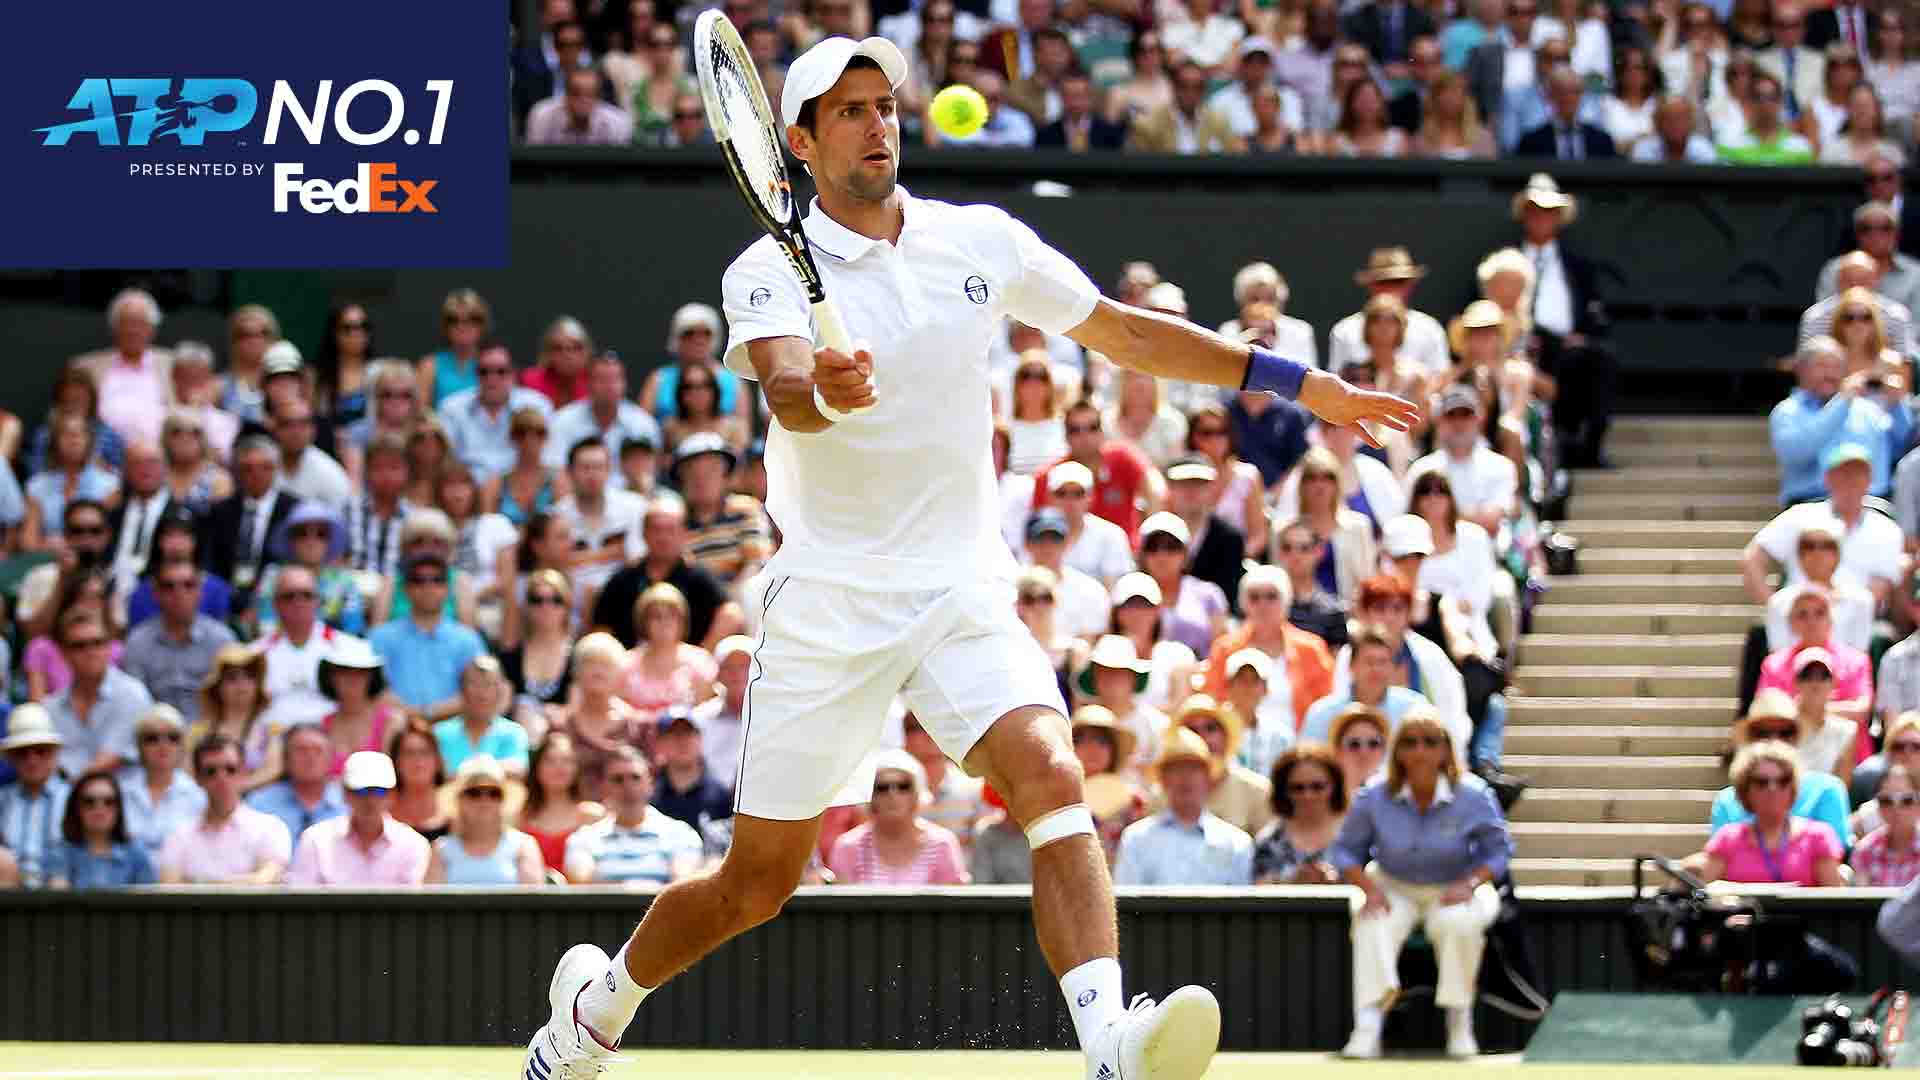 Novak Djokovic alcanzó el No. 1 del FedEx ATP Rankings por 1ª vez luego de ganar Wimbledon en 2011.